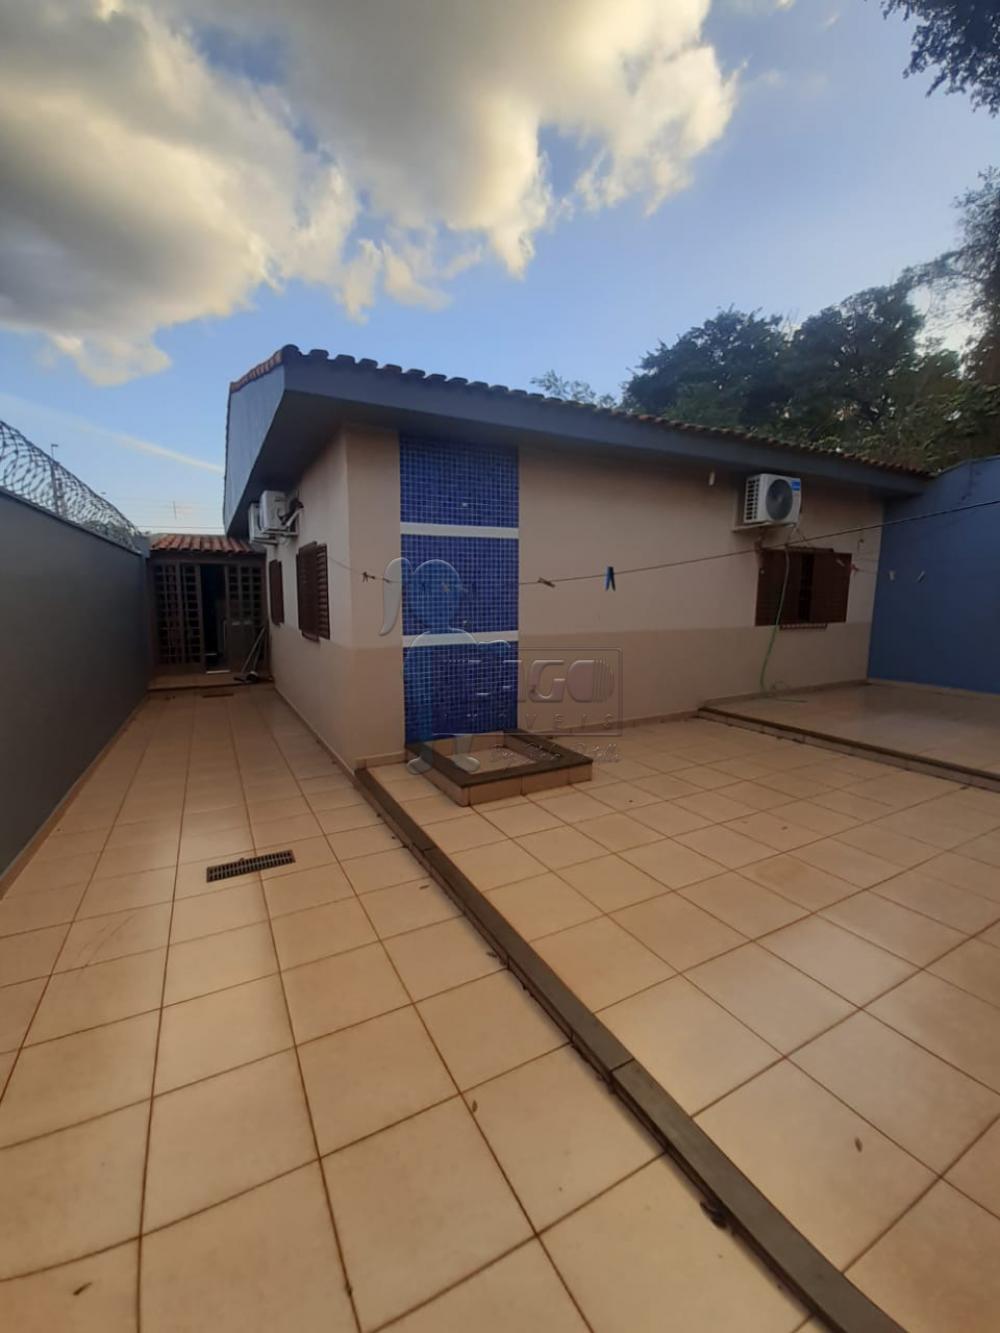 Comprar Casas / Padrão em Ribeirão Preto R$ 400.000,00 - Foto 15